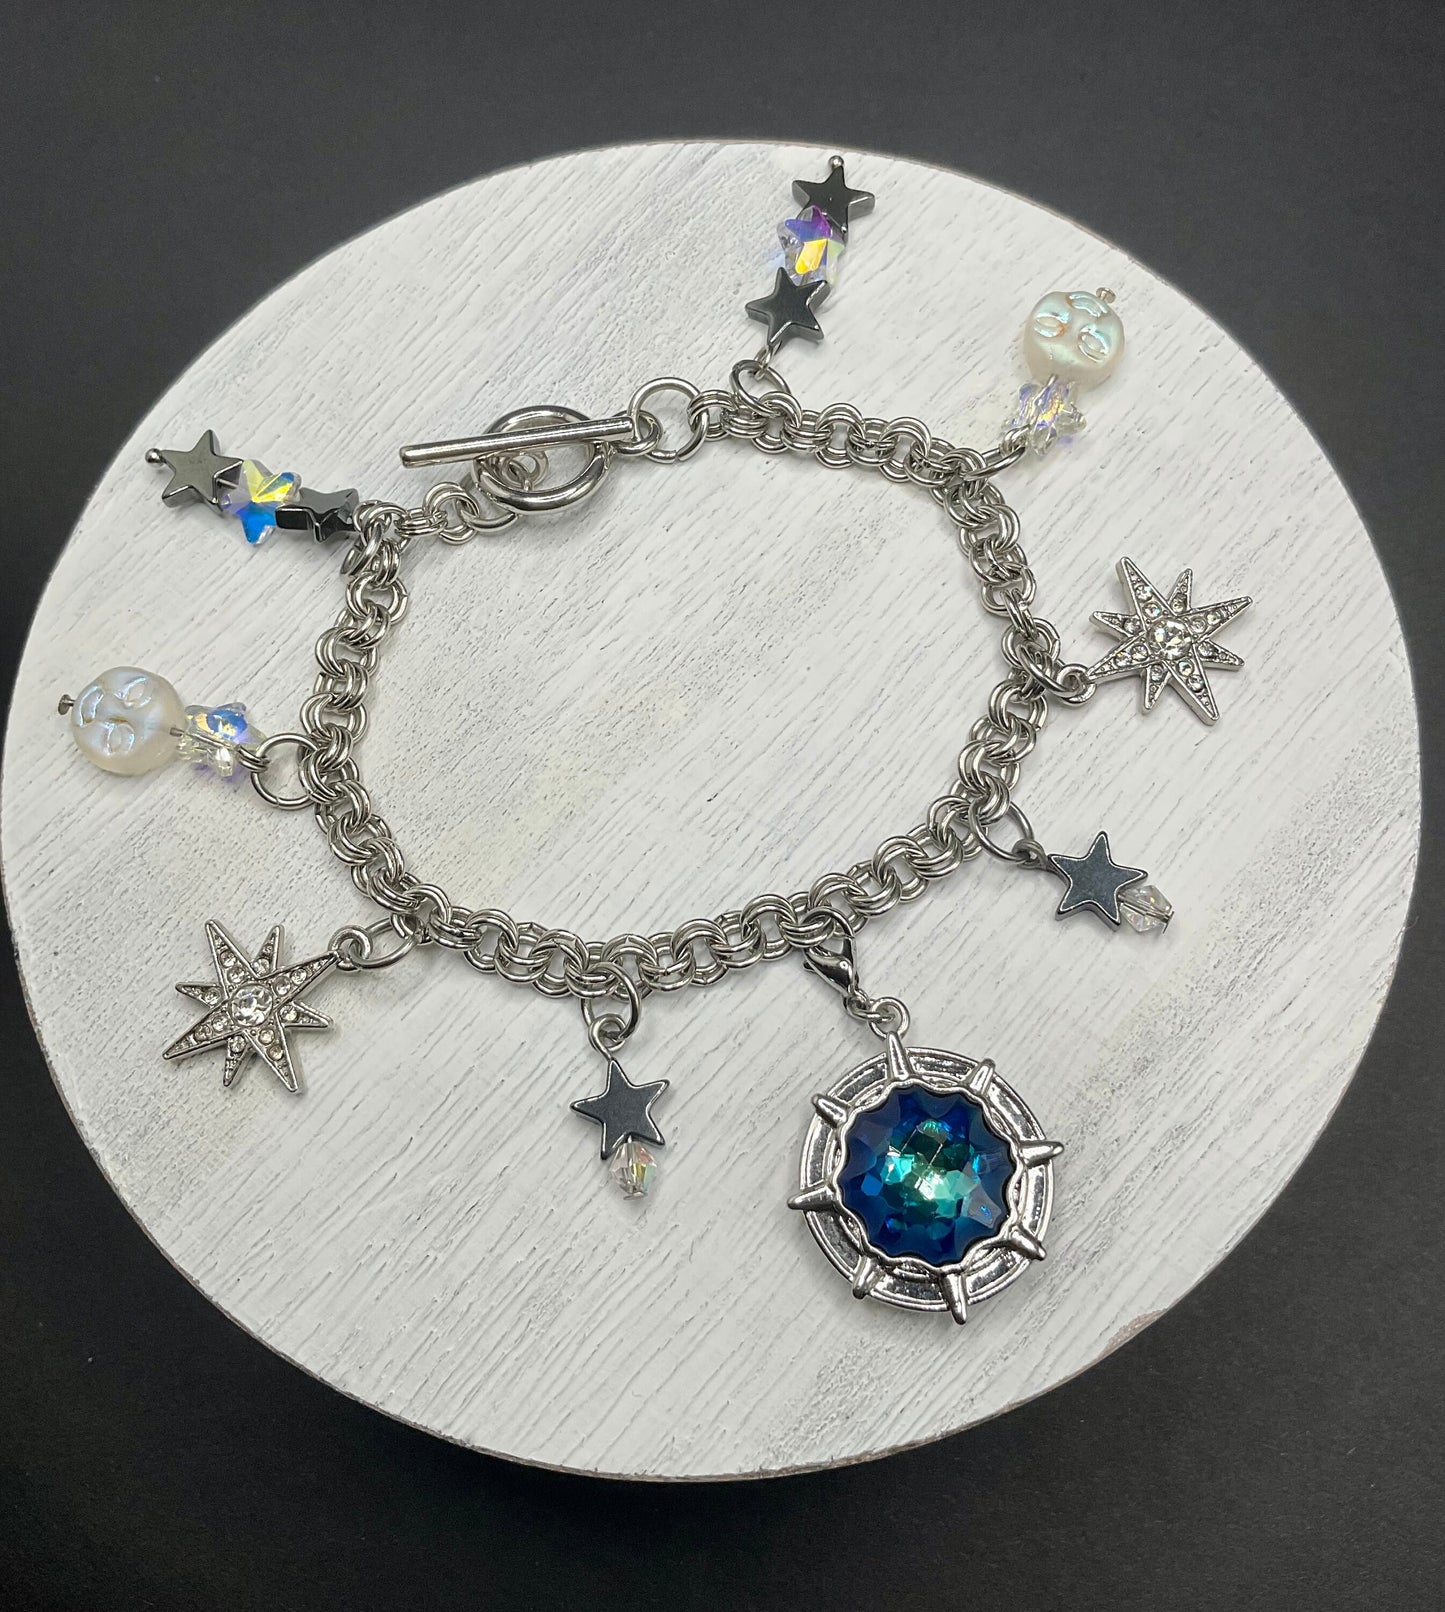 Star Moon Crystal Bracelet -Teal Green Aqua March Birthstone